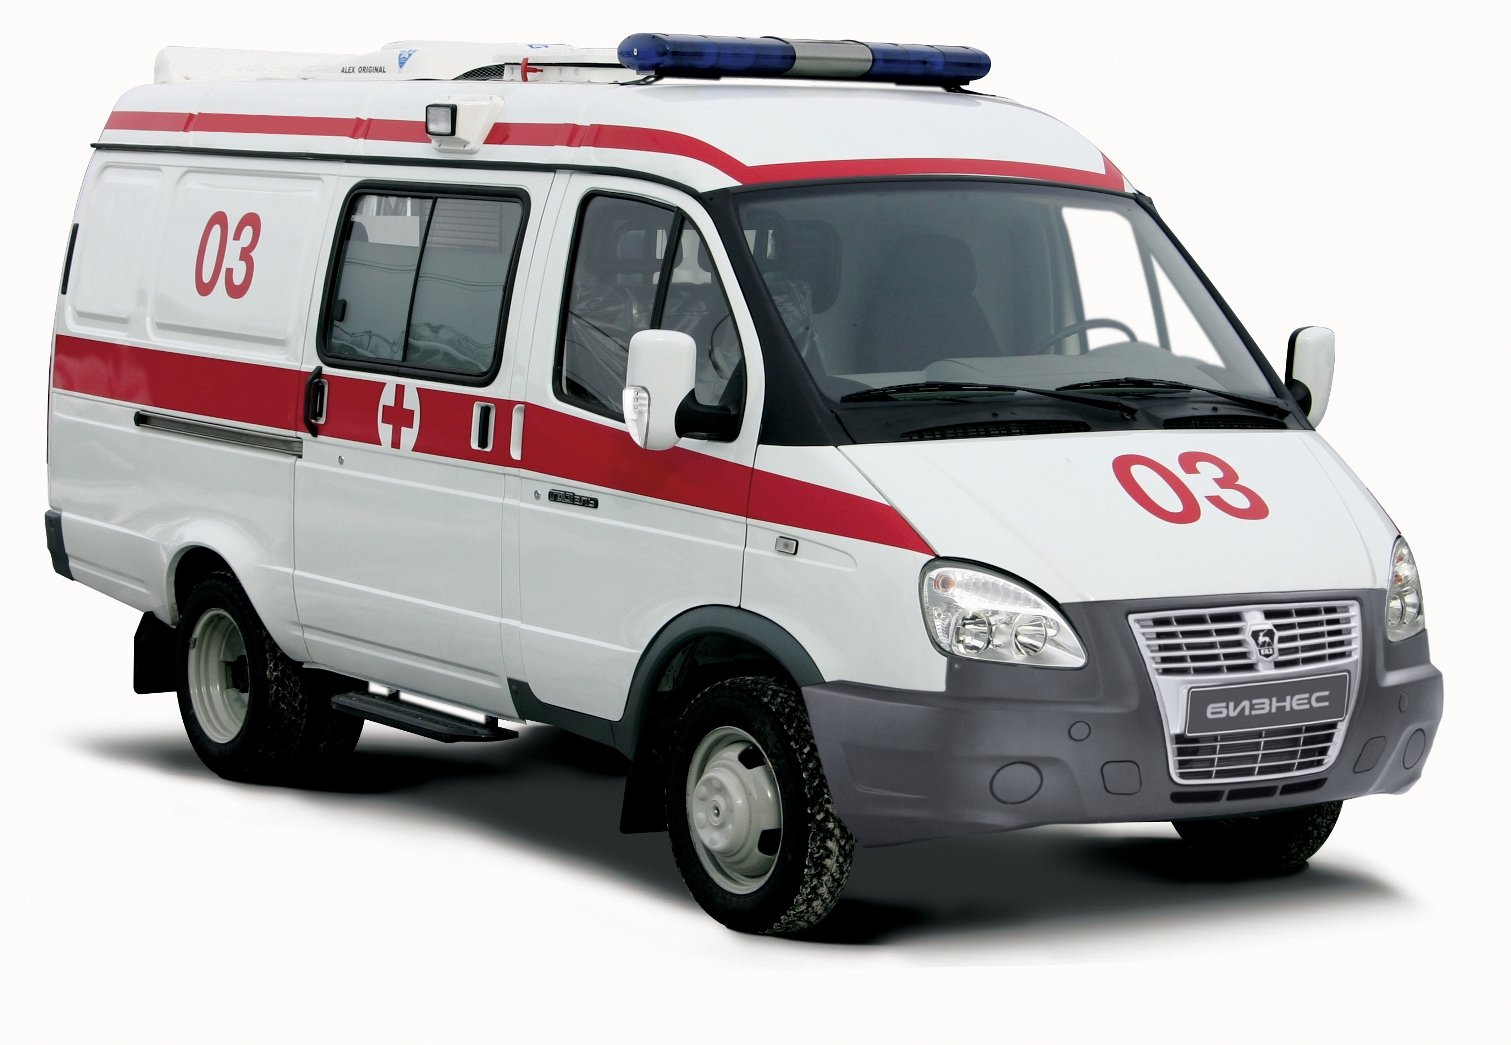 15 машин «Скорой помощи» класса «B» на базе «ГАЗель БИЗНЕС» для медицинских учреждений Нижегородской области